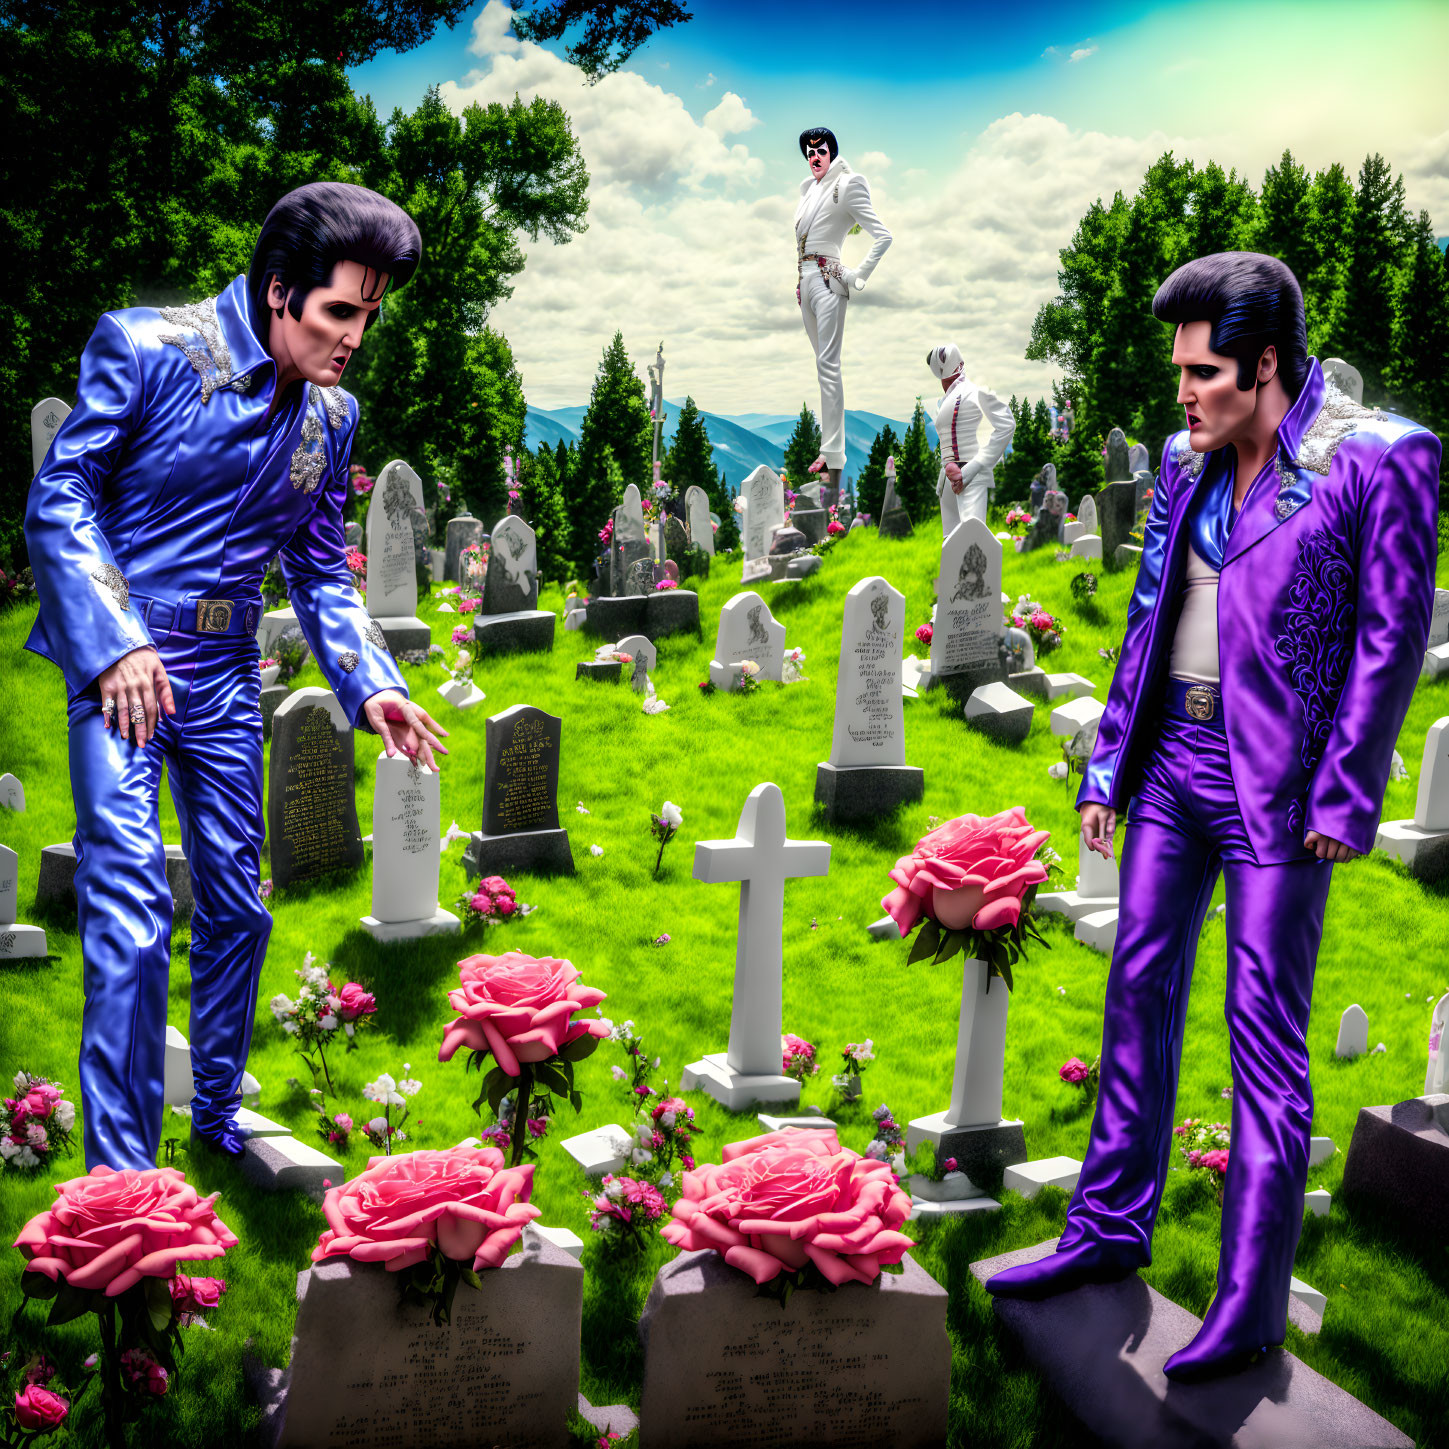 Elvises visit their gravesite